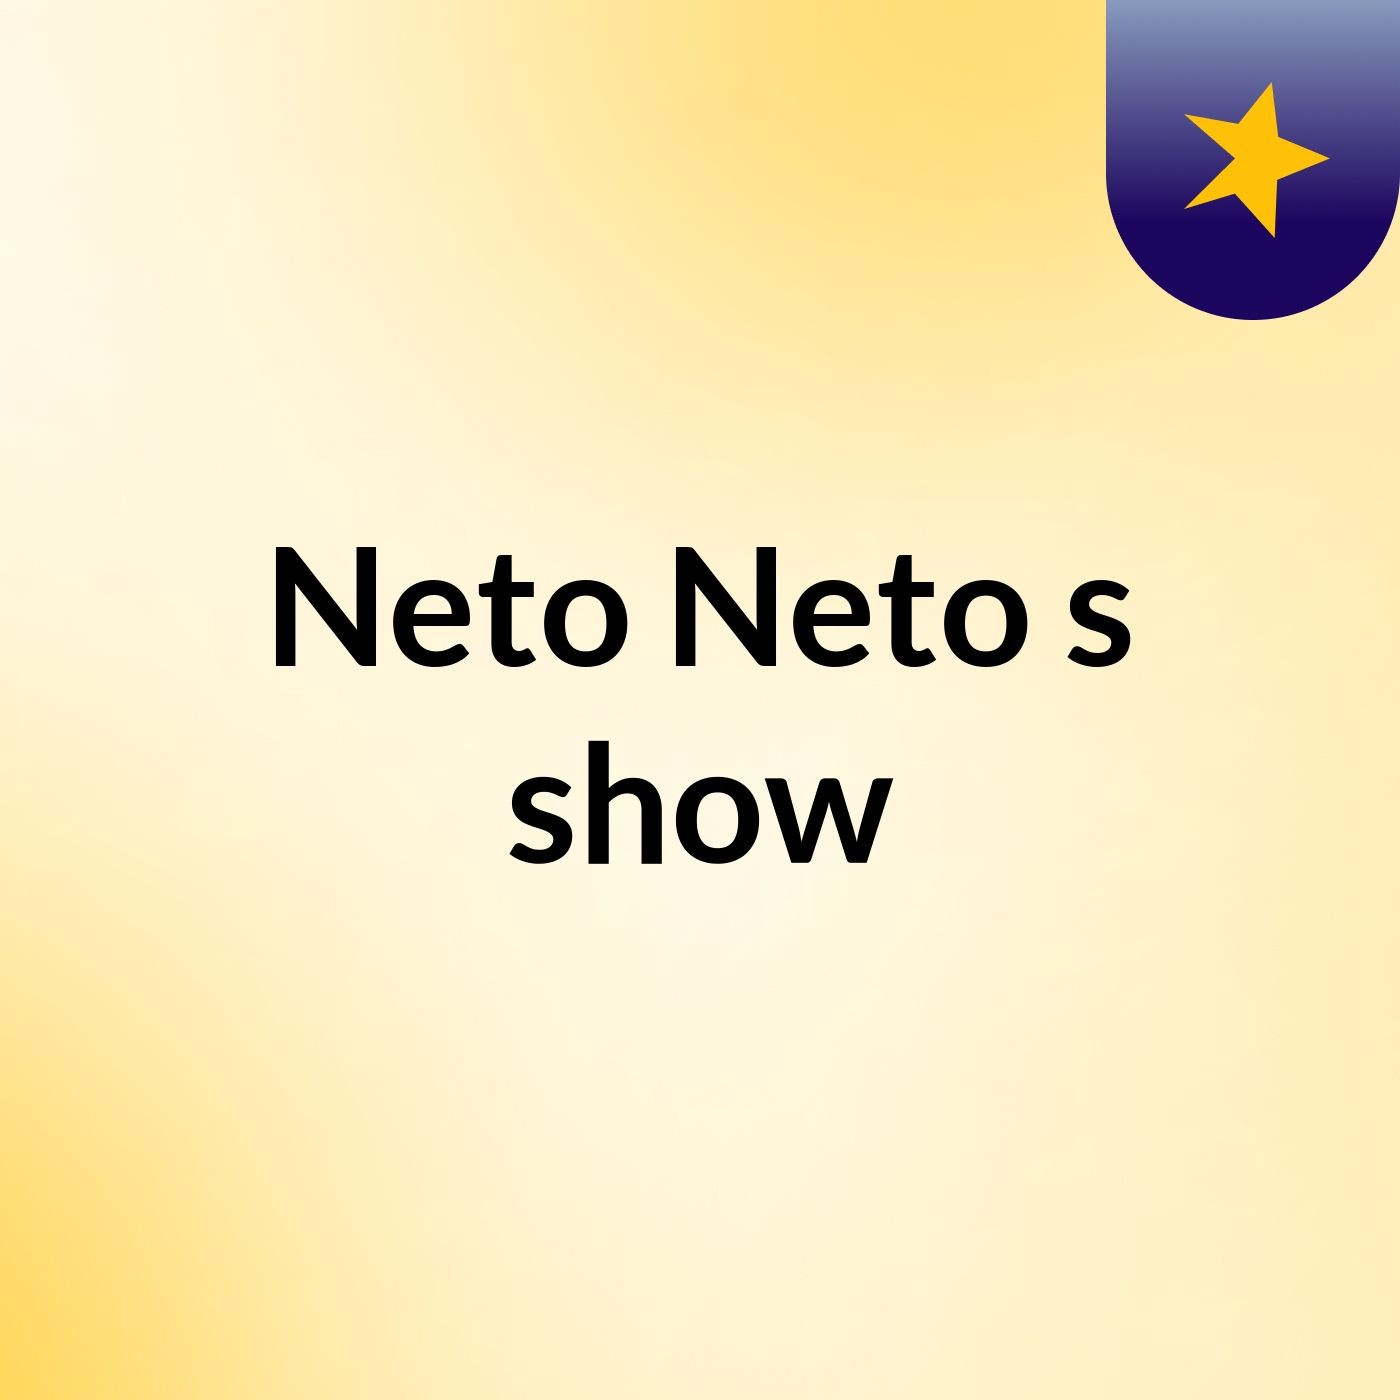 Neto Neto's show